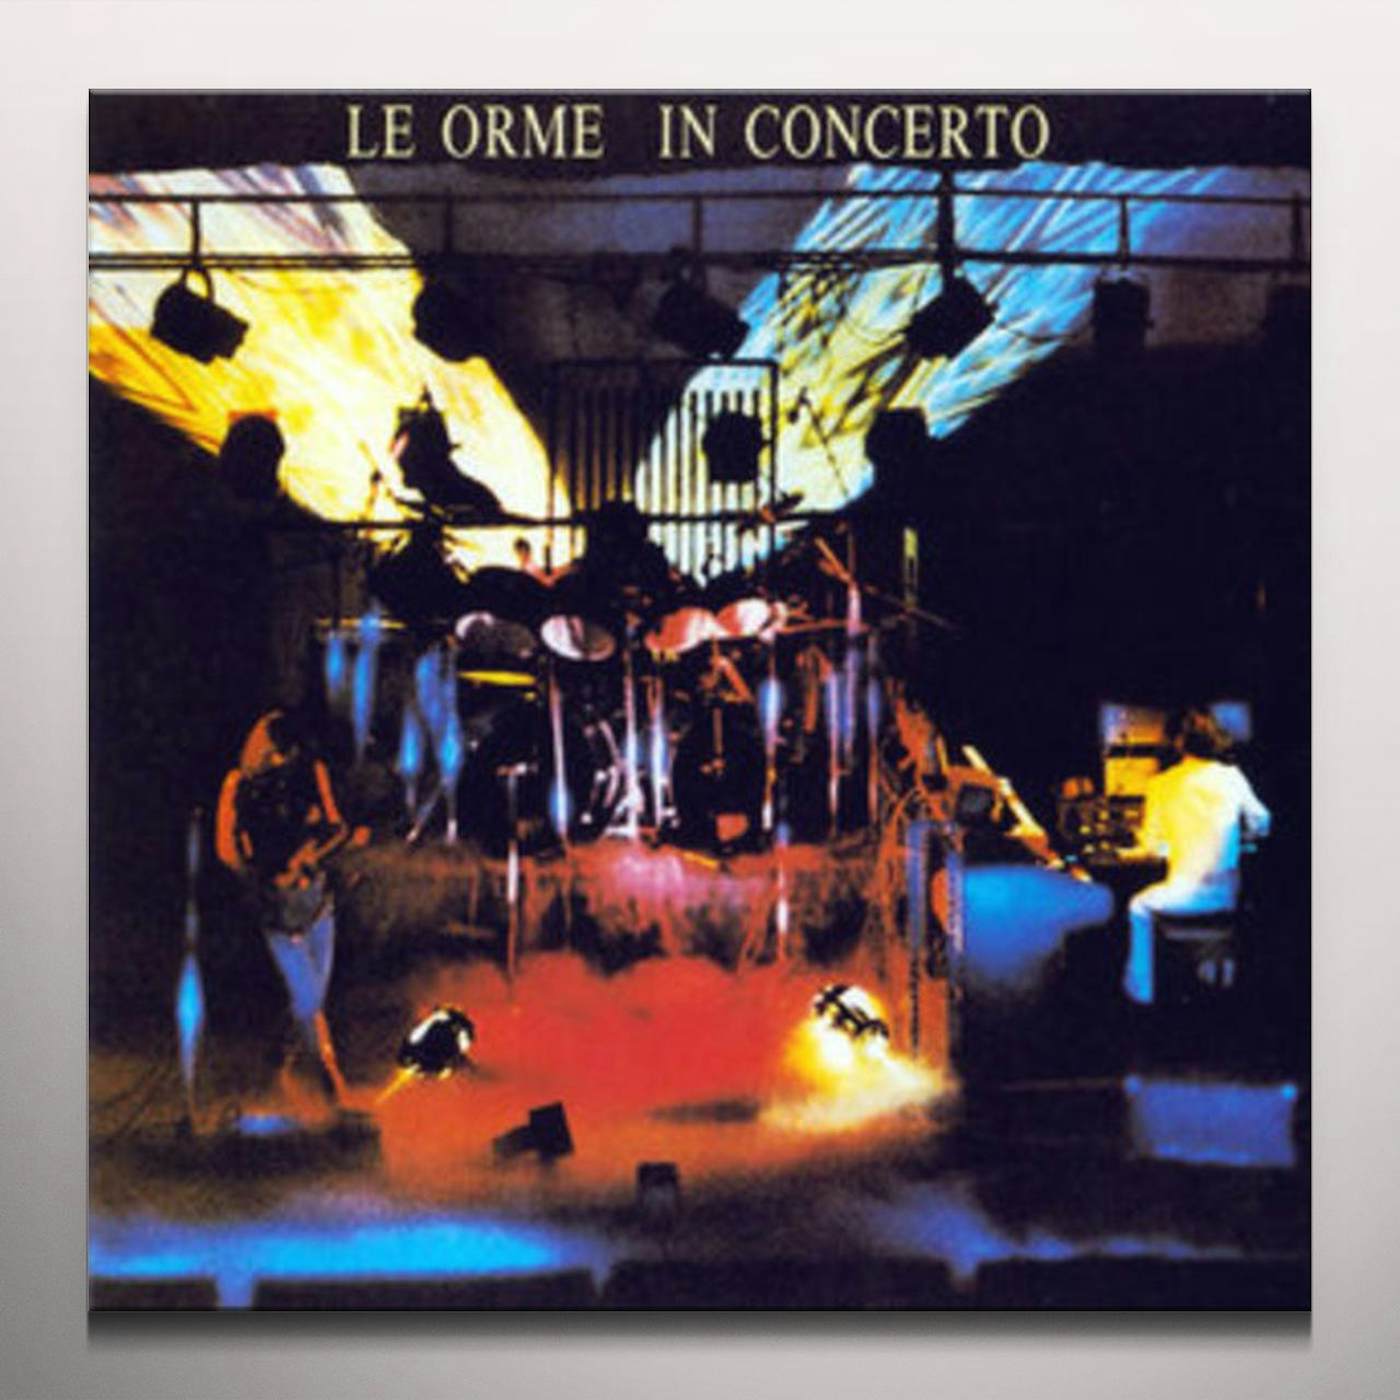 Le Orme In Concerto Vinyl Record